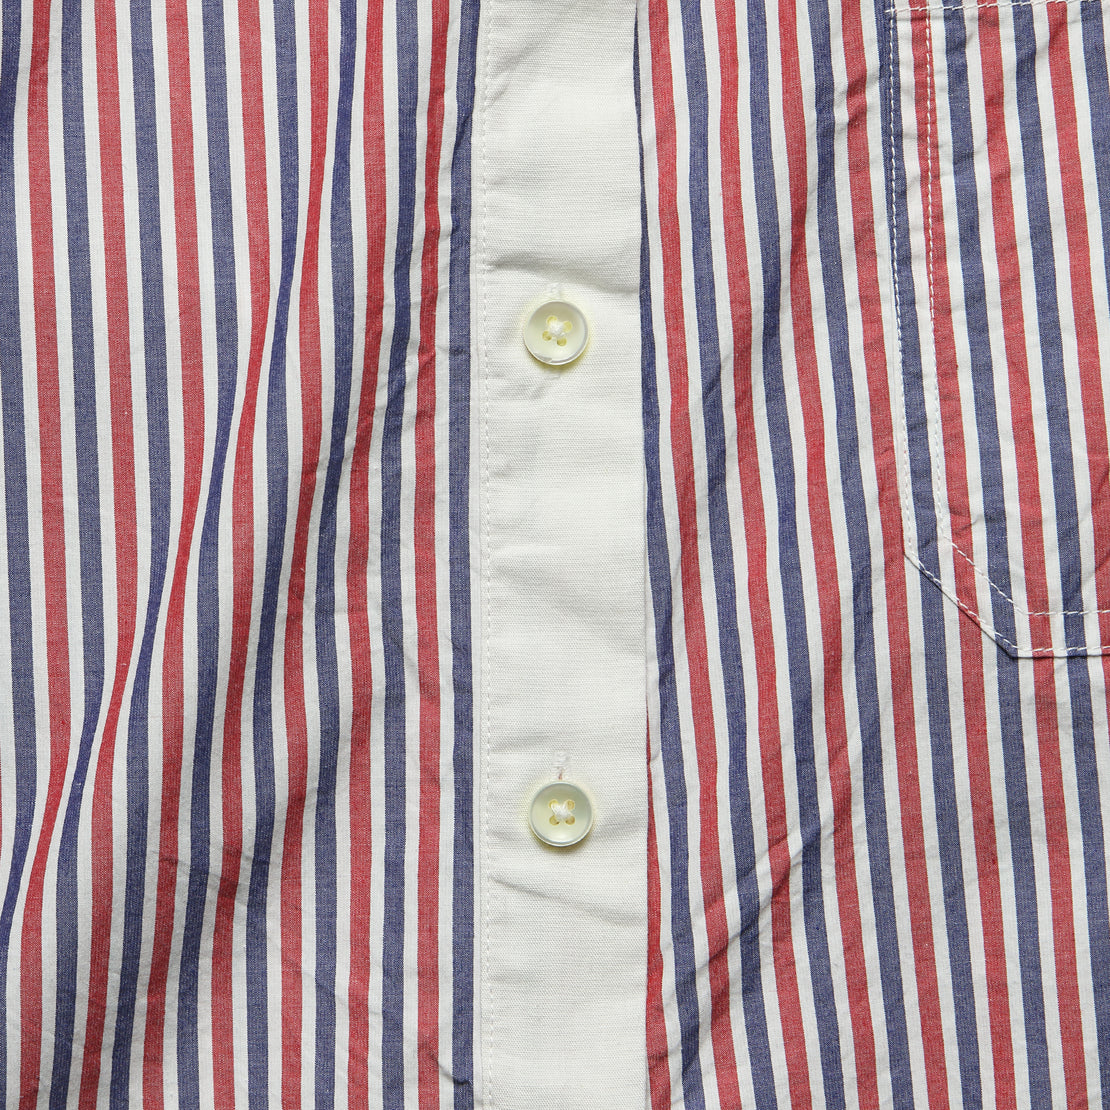 Multi Stripe Popover Tunic - Red/Blue/White - Alex Mill - STAG Provisions - W - Tops - L/S Woven